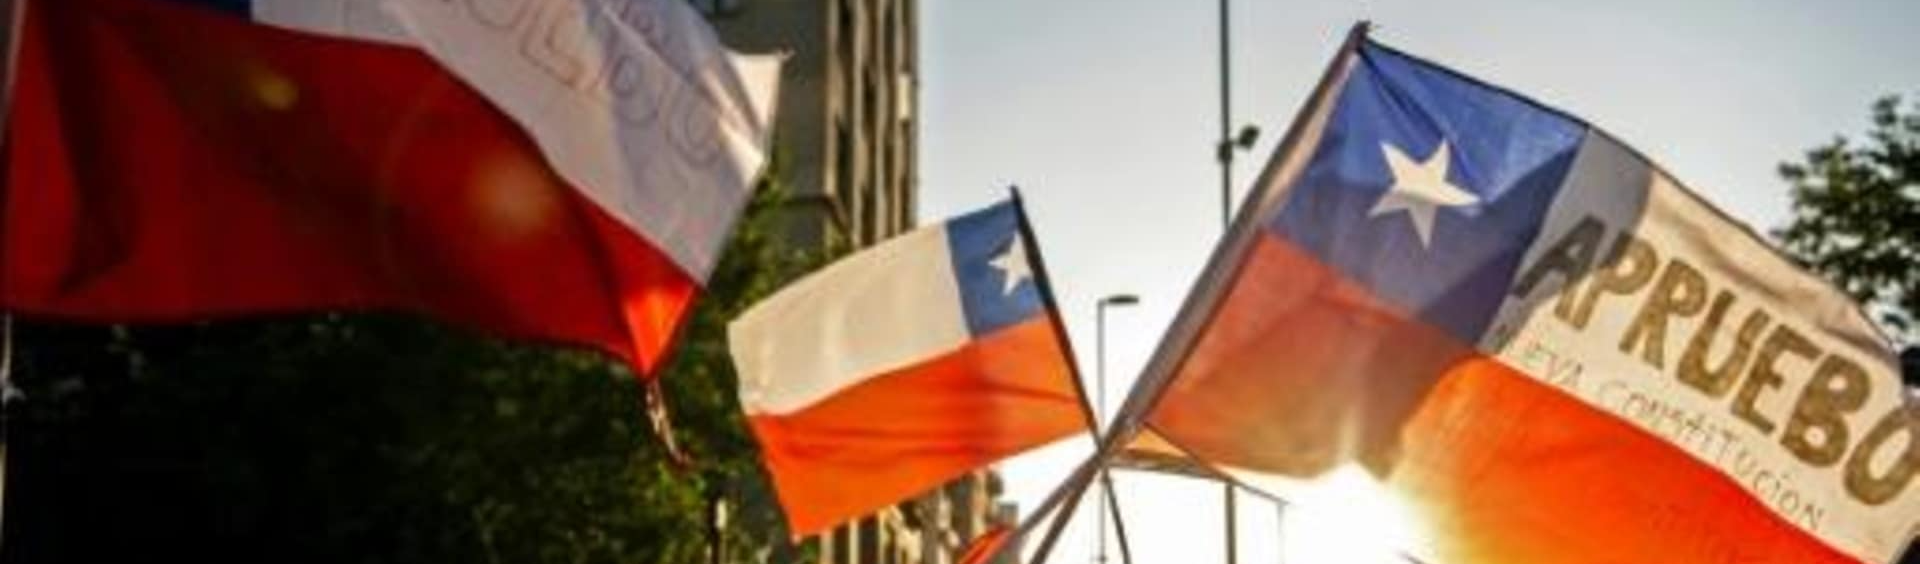 Chile: Oligarquia presidida por Piñera tentou sabotar soberania popular, mas não conseguiu